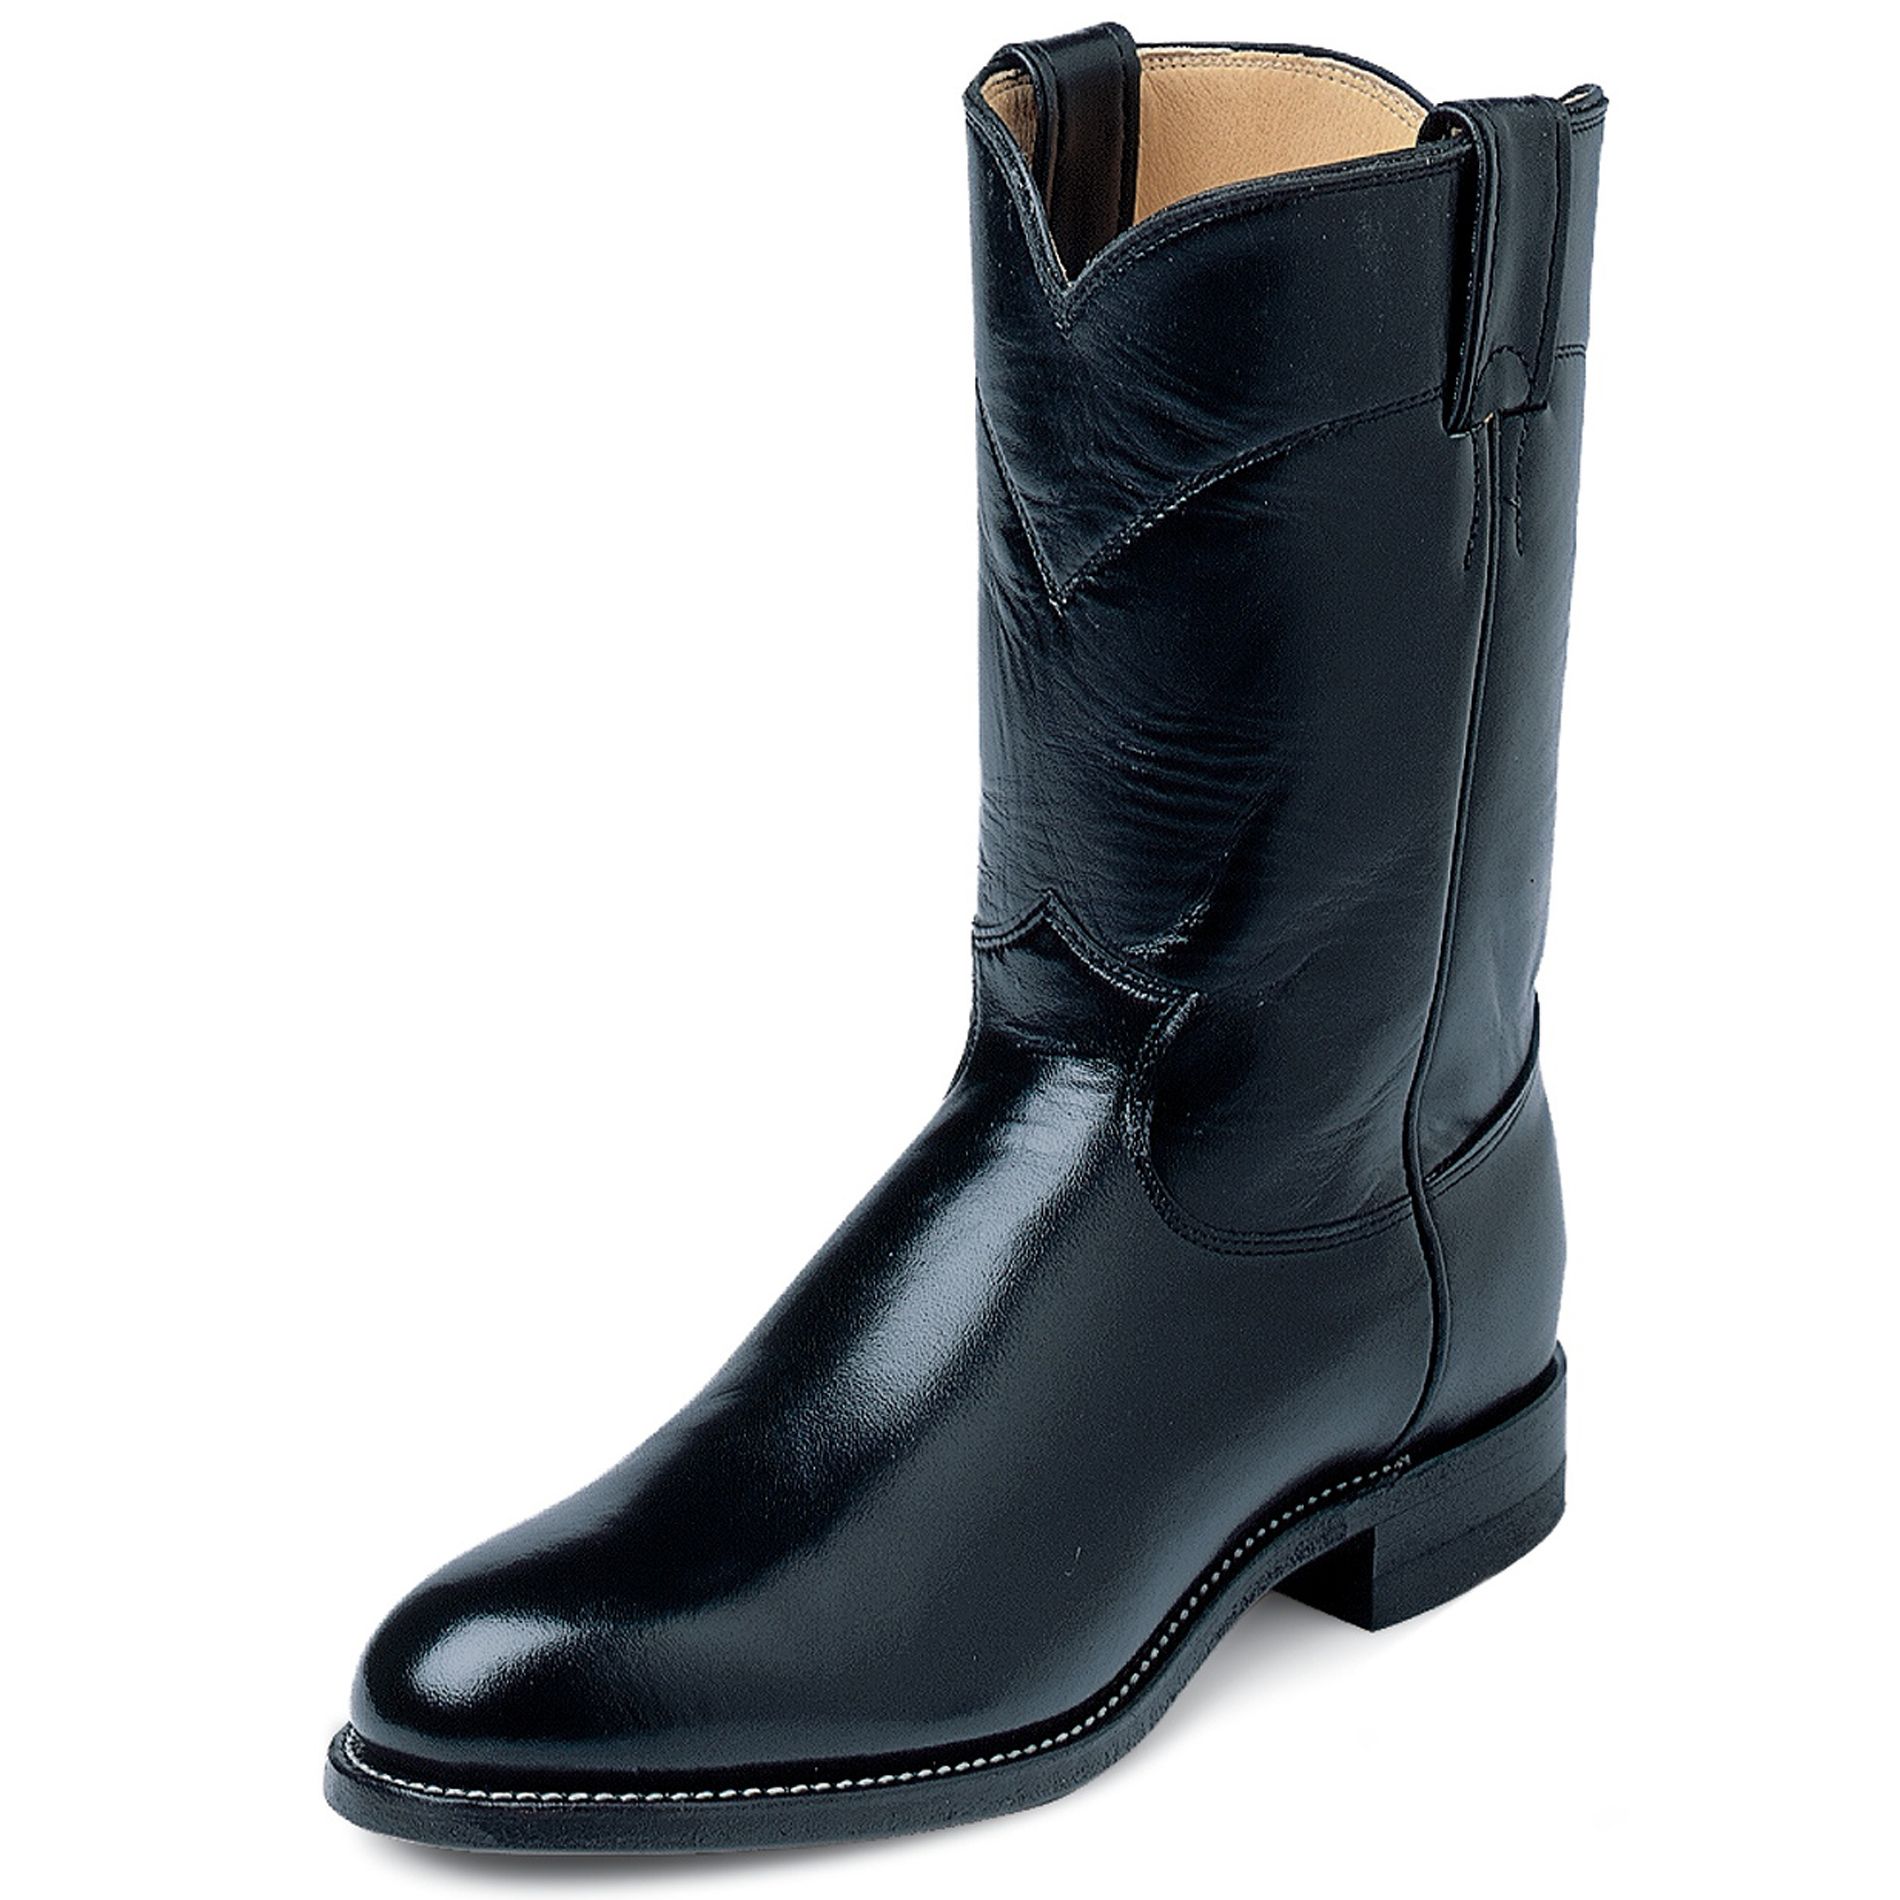 Men's 3133 10" Roper Cowboy Boot - Black